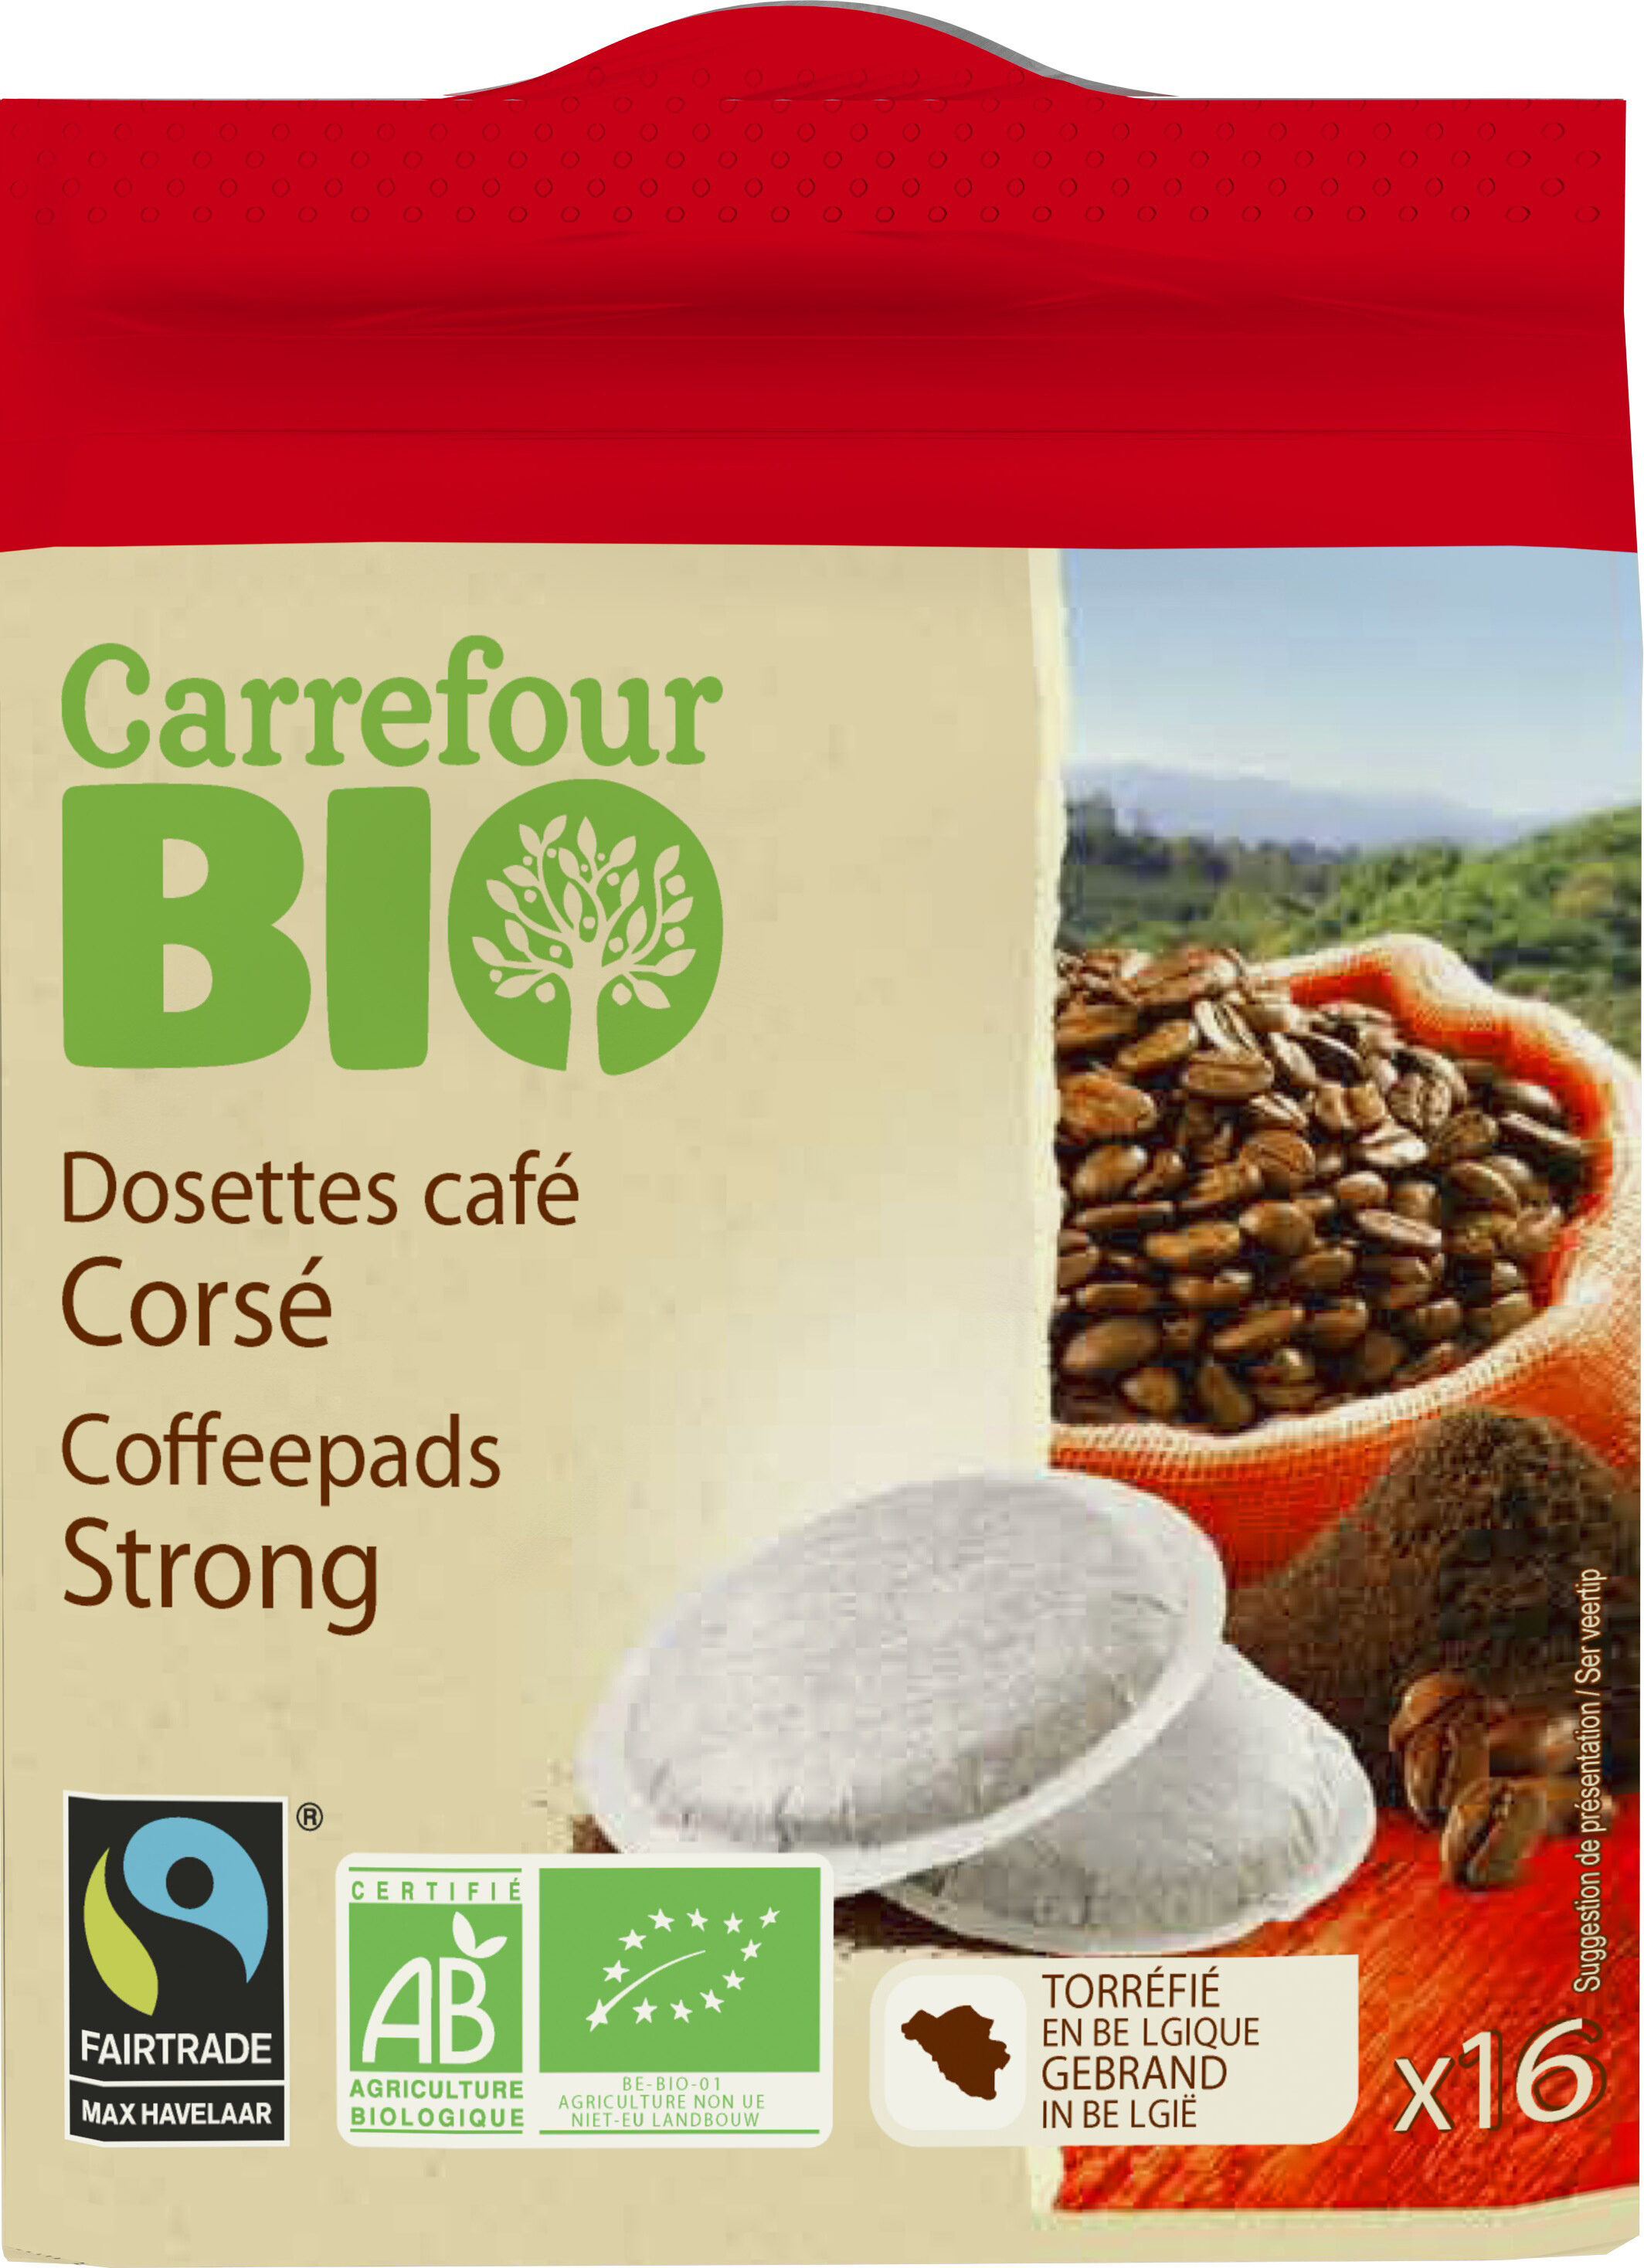 Dosettes café Corsé Bio - Product - fr